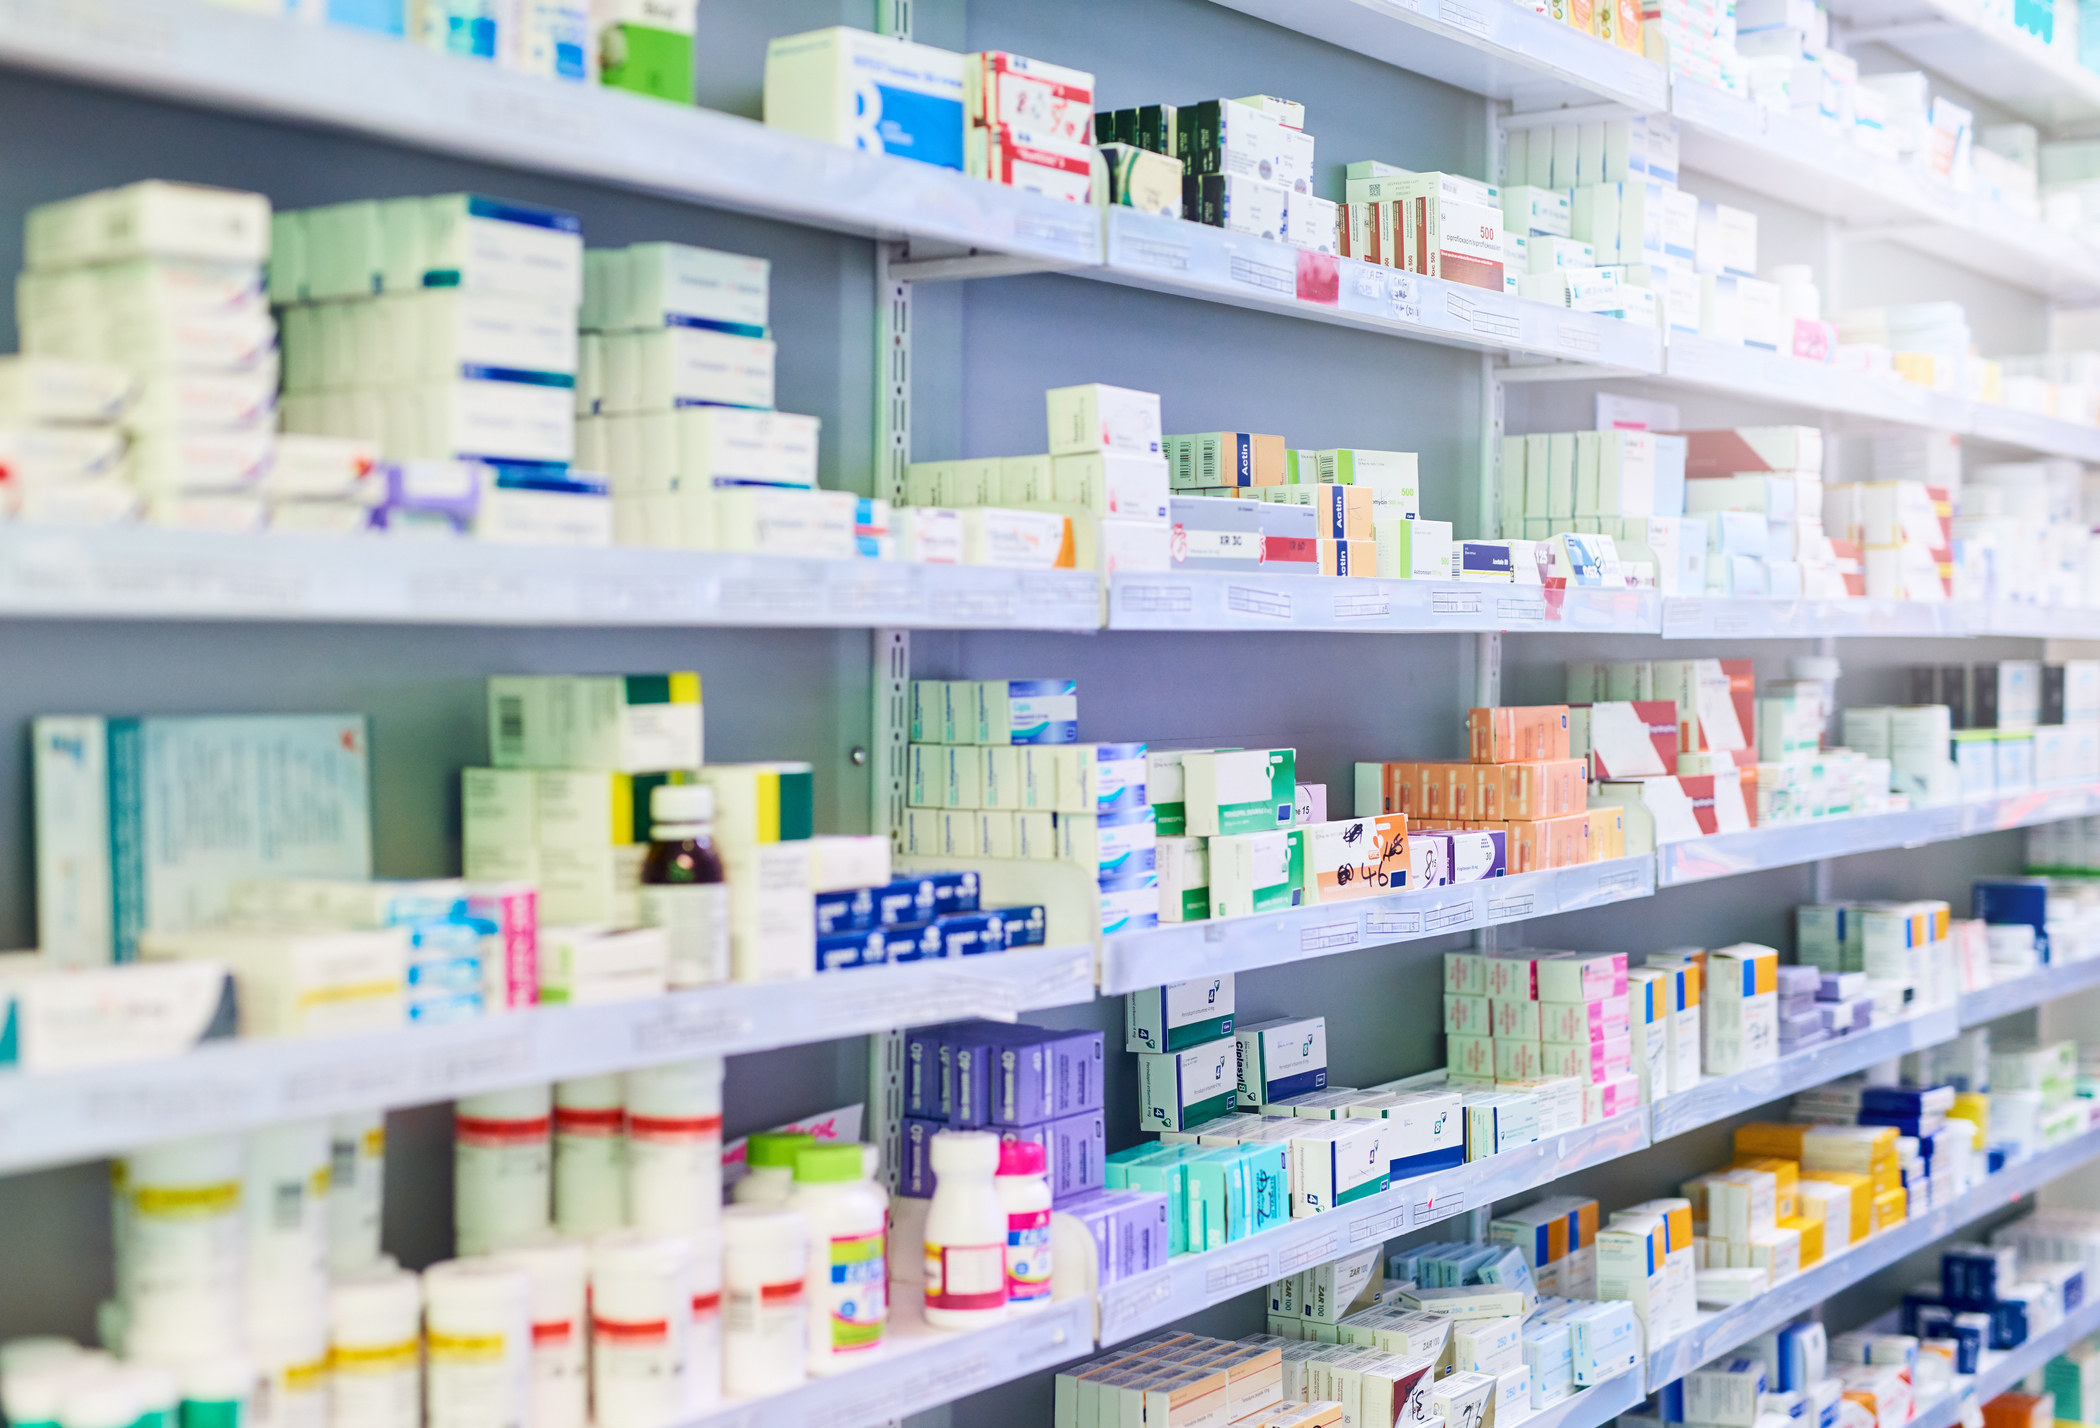 Где Можно Посмотреть Лекарства В Аптеках